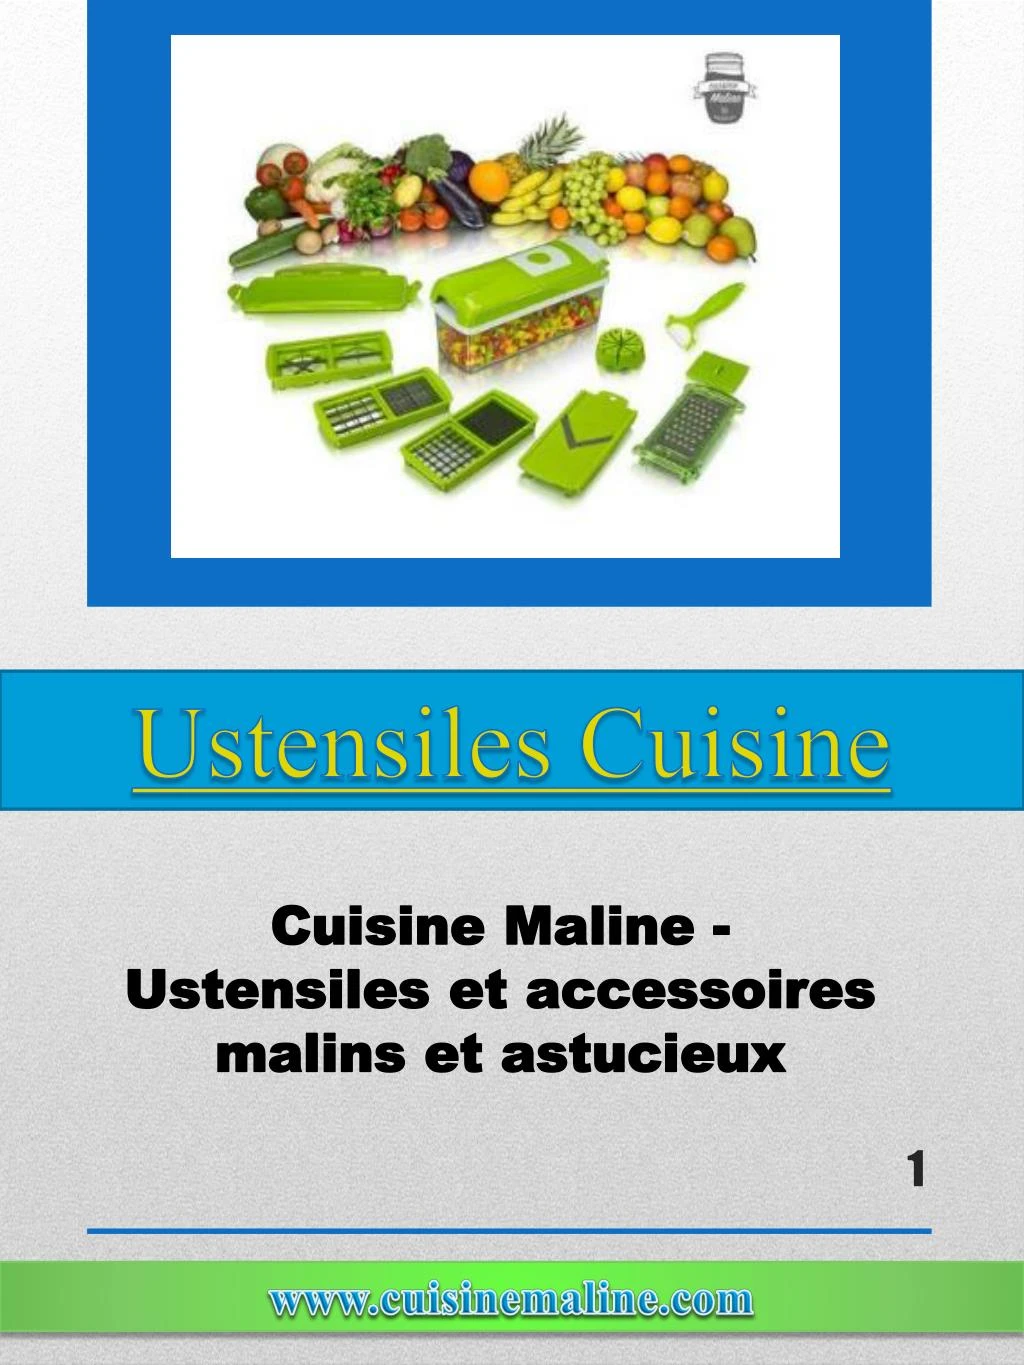 ustensiles cuisine